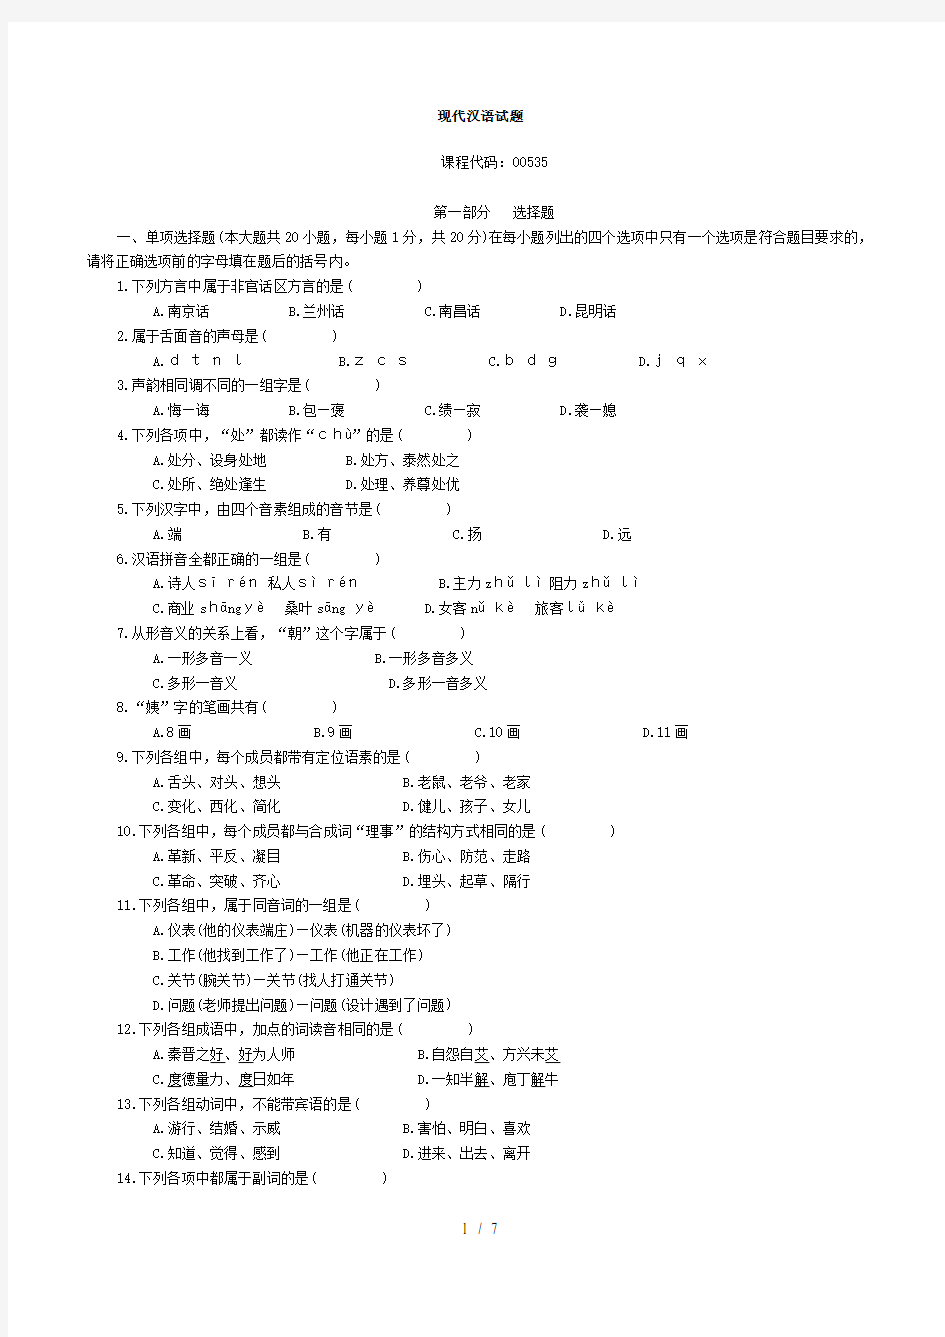 现代汉语完整版试题及复习资料